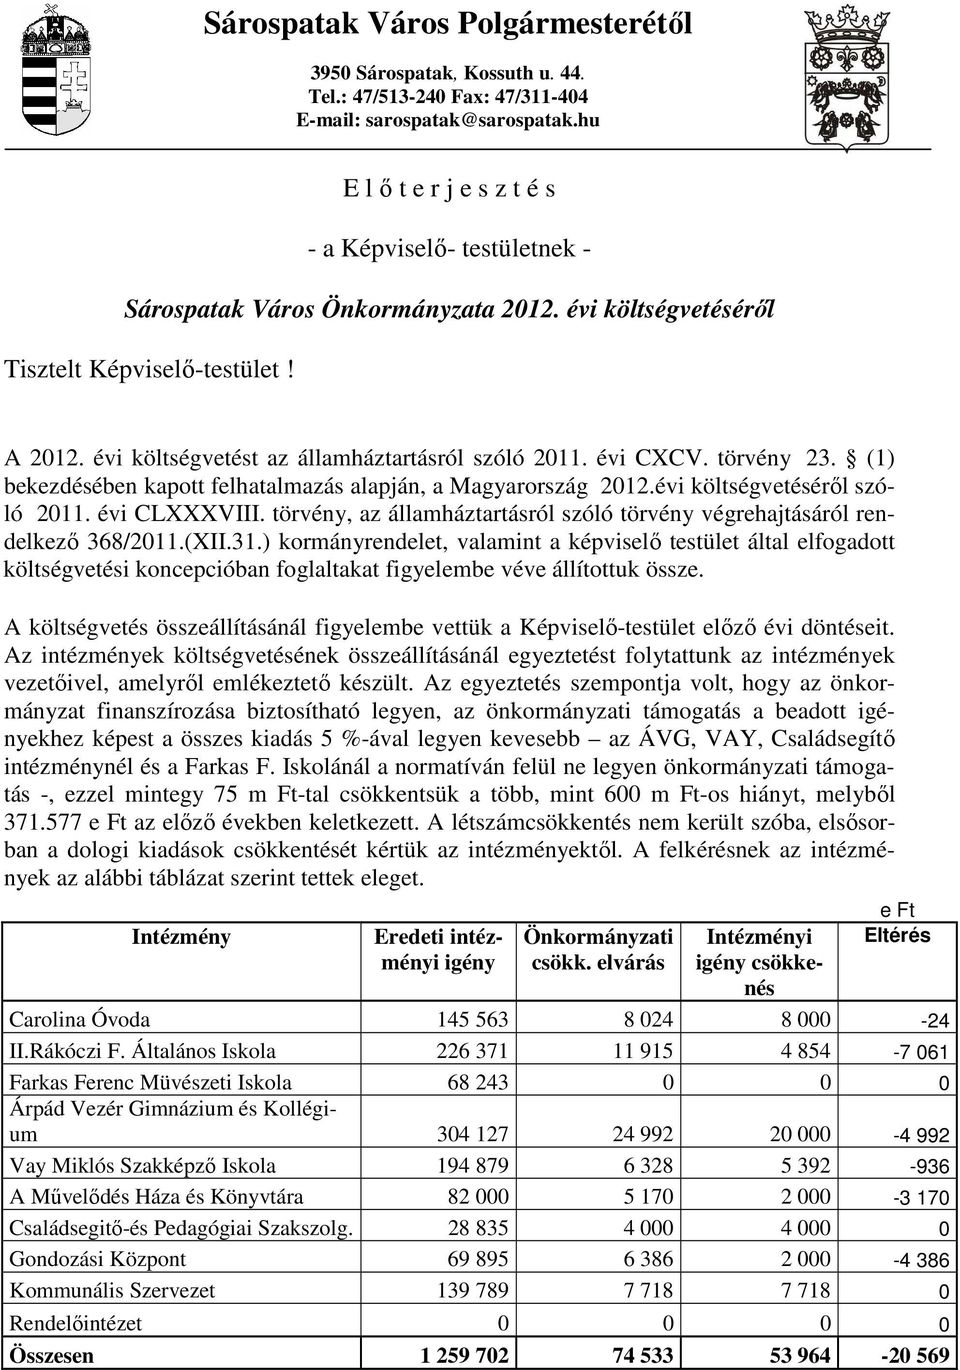 évi költségvetést az államháztartásról szóló 2011. évi CXCV. törvény 23. (1) bekezdésében kapott felhatalmazás alapján, a Magyarország 2012.évi költségvetésérıl szóló 2011. évi CLXXXVIII.